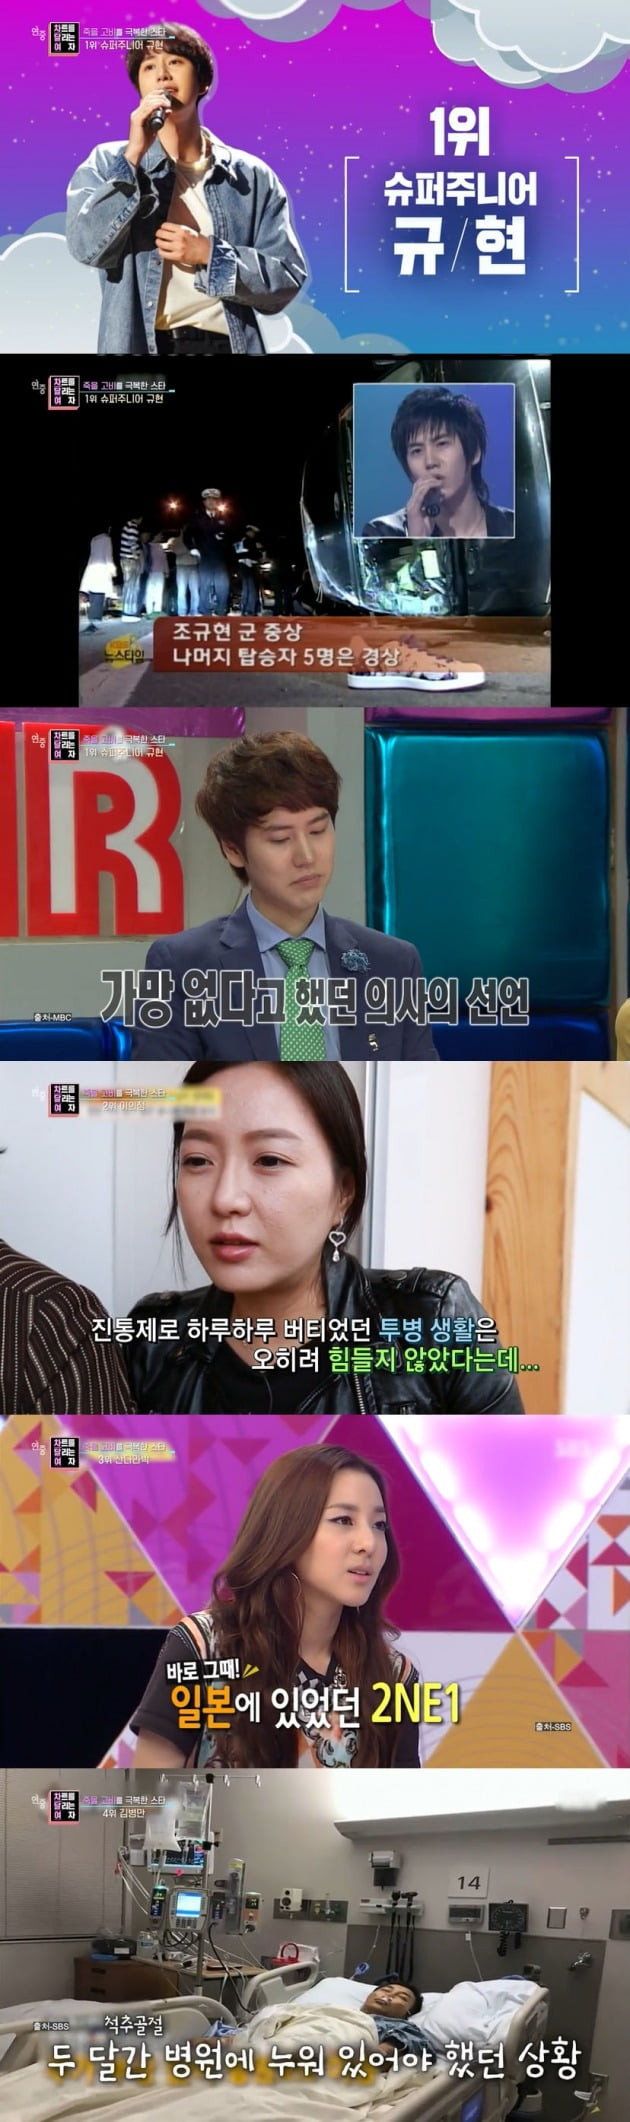 사진=KBS2 '연중라이브' 영상 캡처